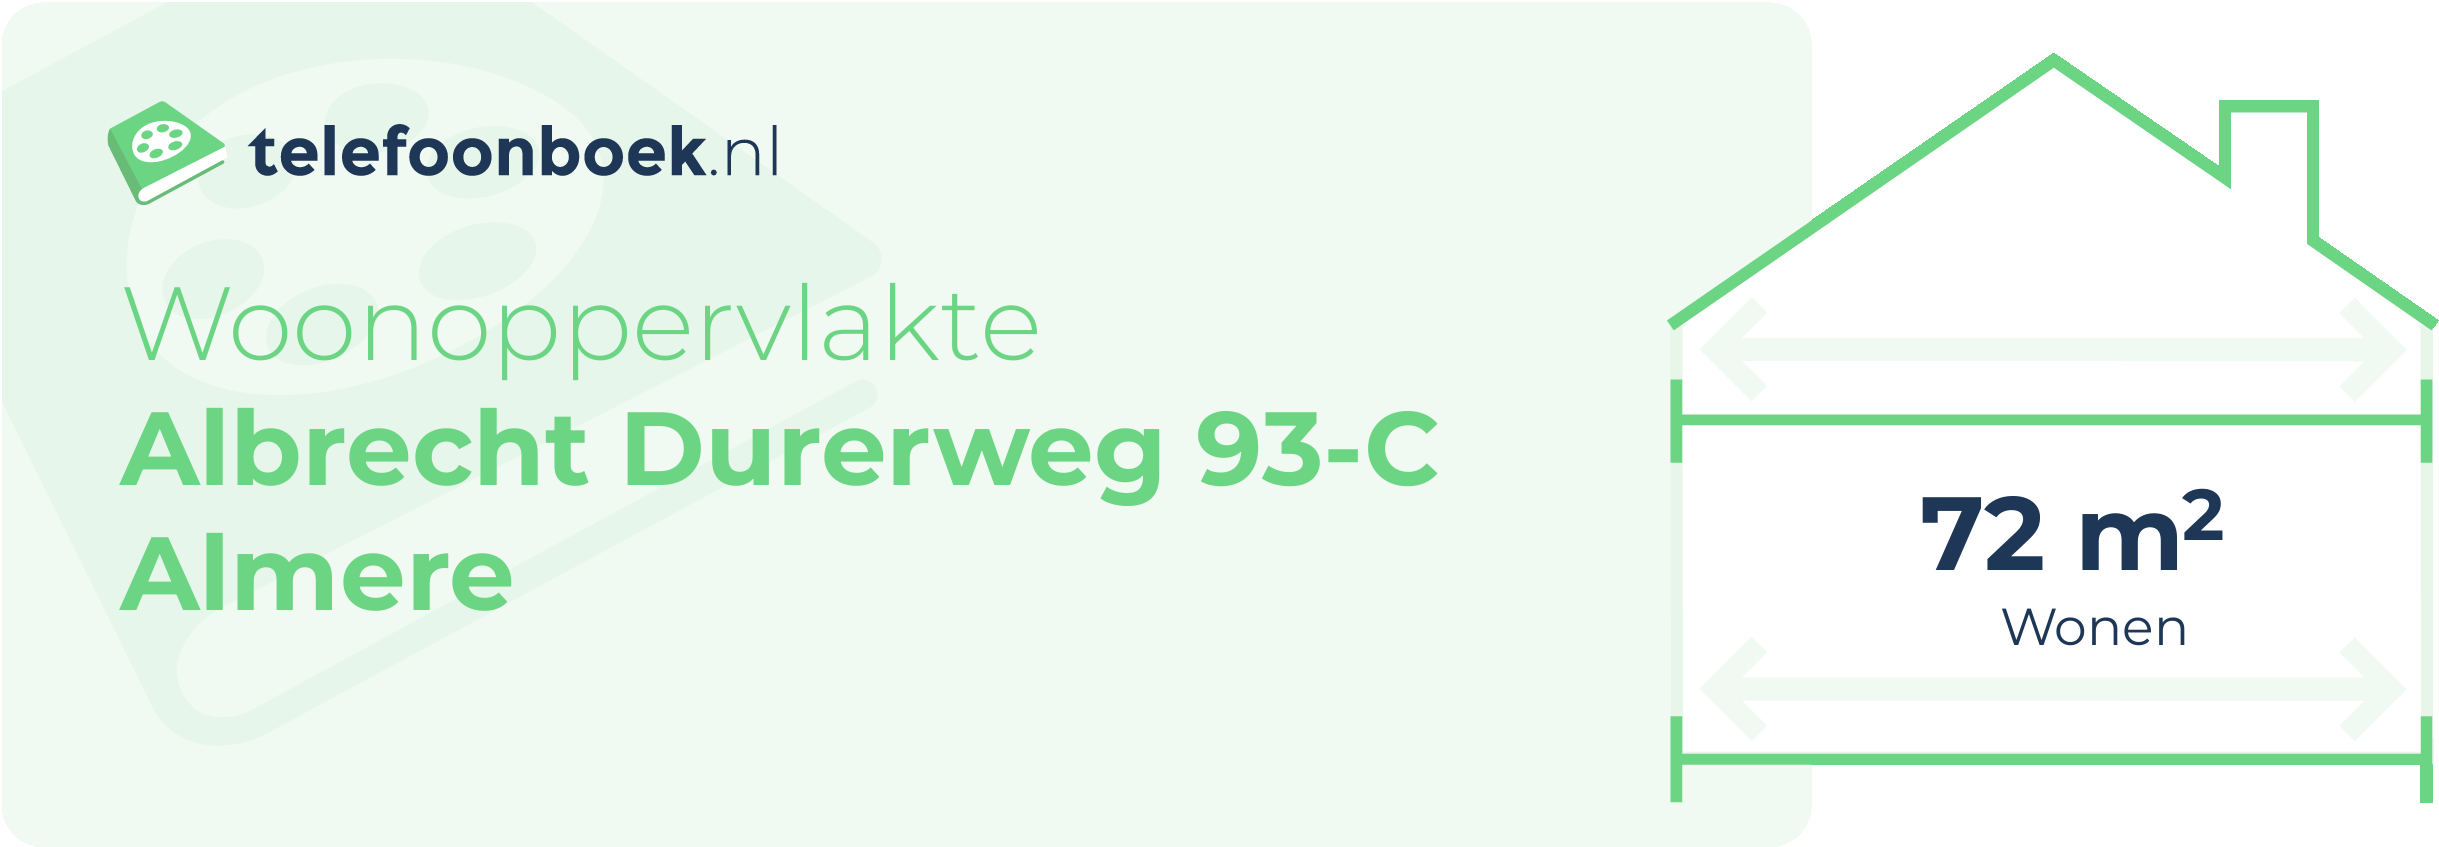 Woonoppervlakte Albrecht Durerweg 93-C Almere